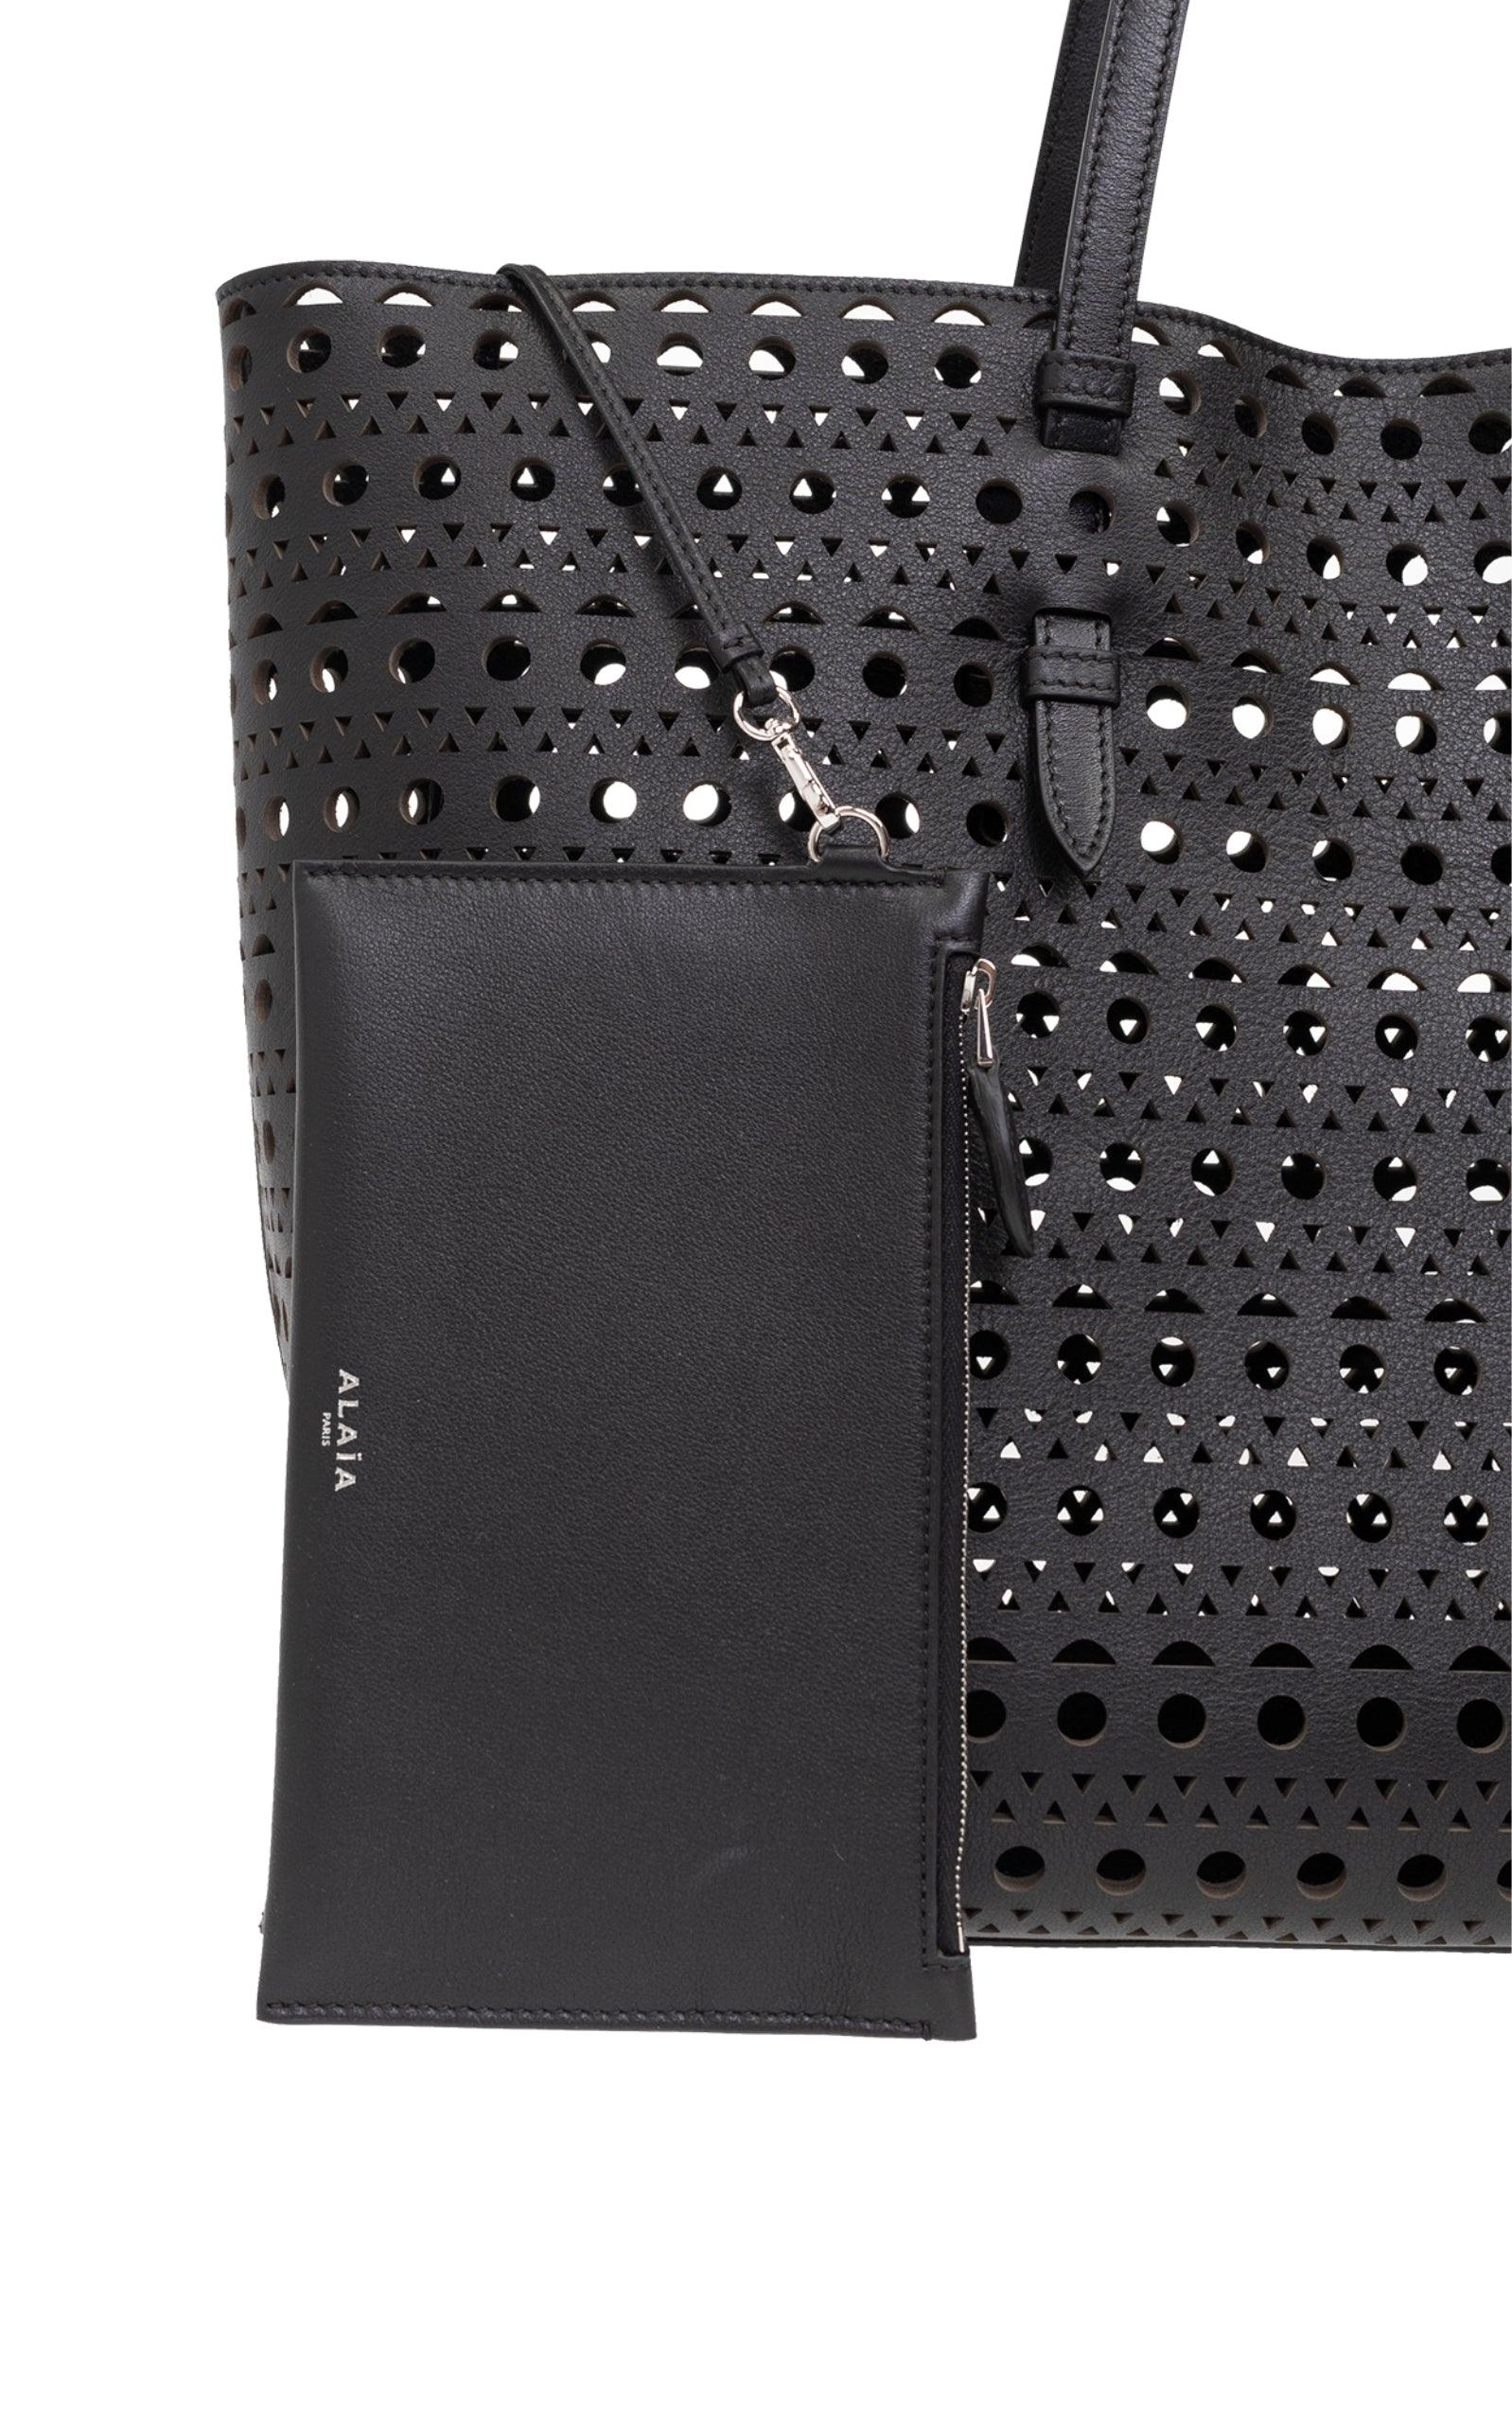 Mina 44 Large Leather Tote Bag-Shoulder Bags-Alaïa-Mina 44 Large Leather Tote Bag-Black-Leather-Runway Catalog